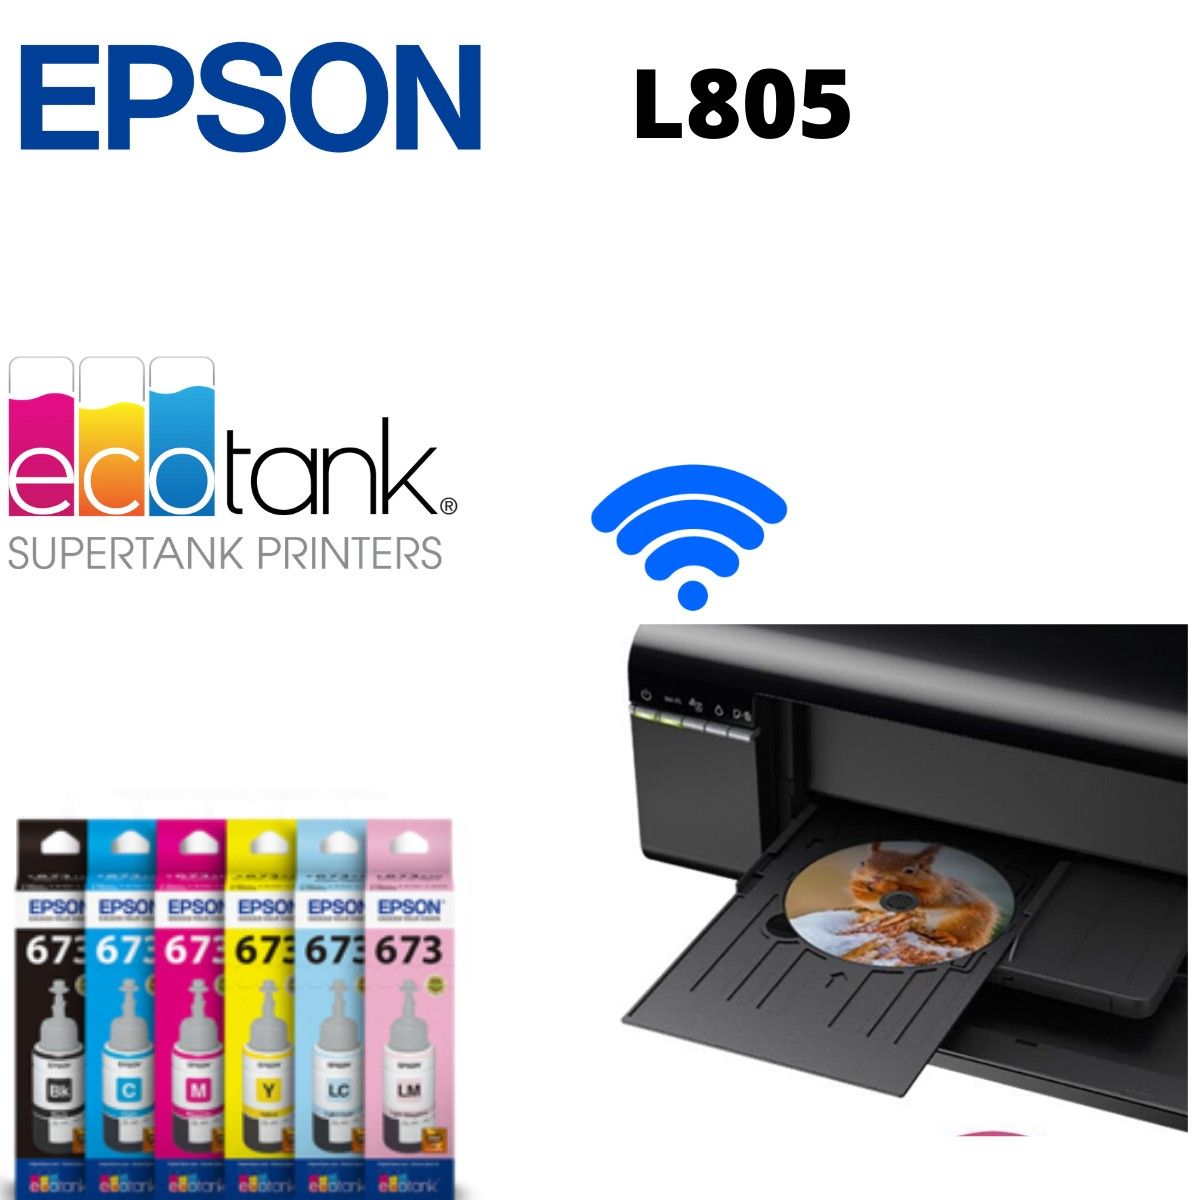 Impresora Epson L805 CD DVD Inalámbrica Tinta 6 Colores - KOBY INVERSIONES